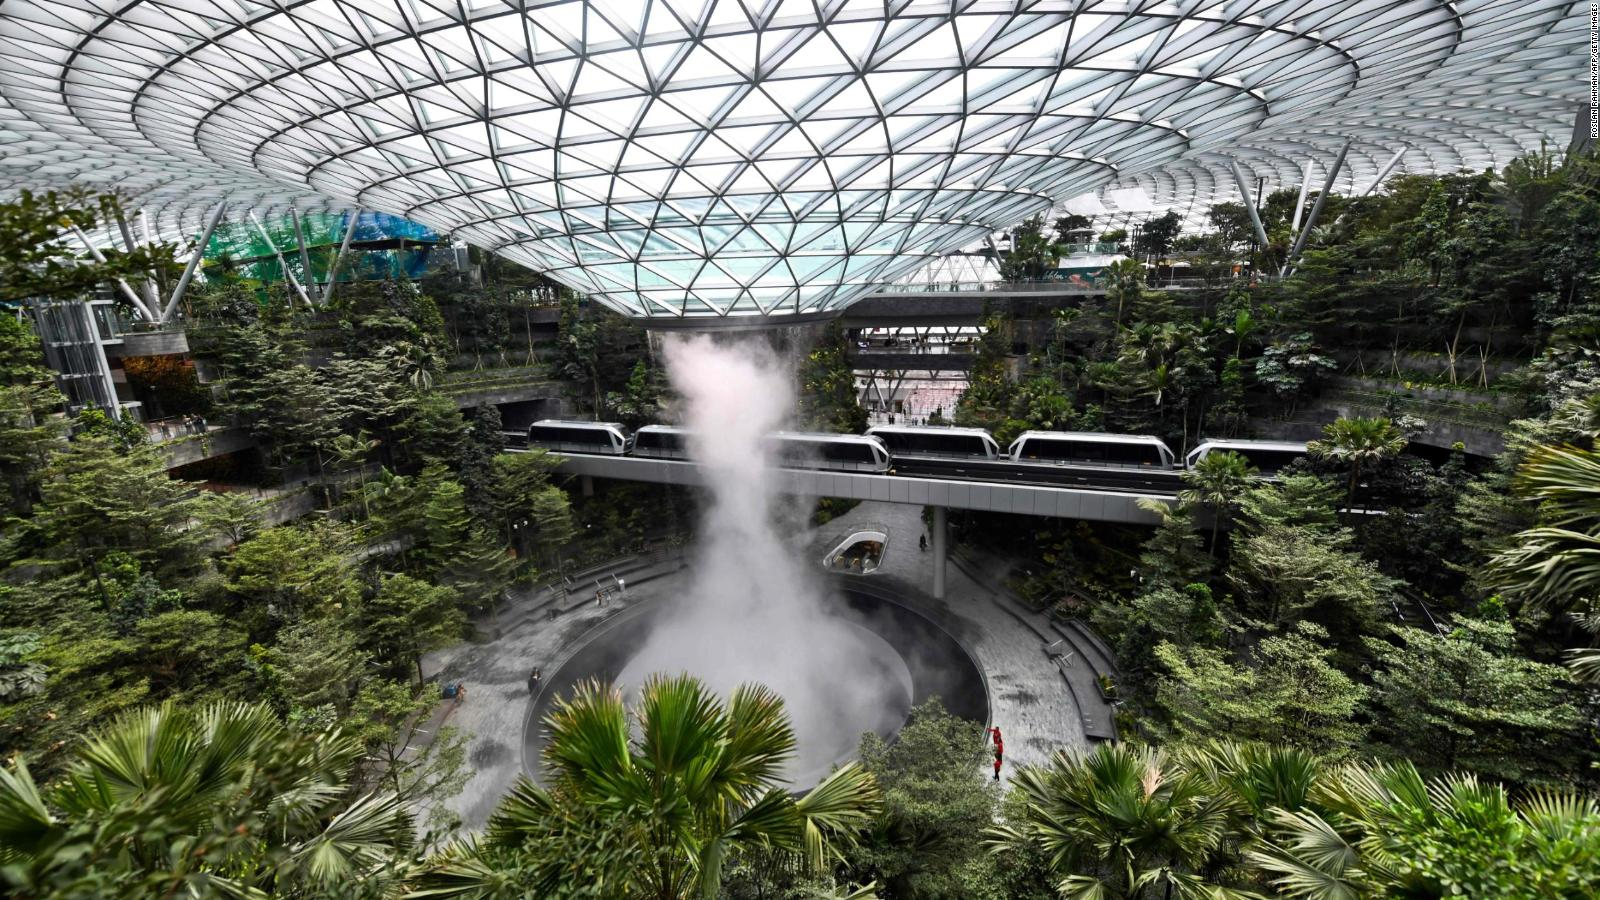 Los 10 aeropuertos más lujosos del mundo entero - Aeropuerto Internacional Changi, Singapur